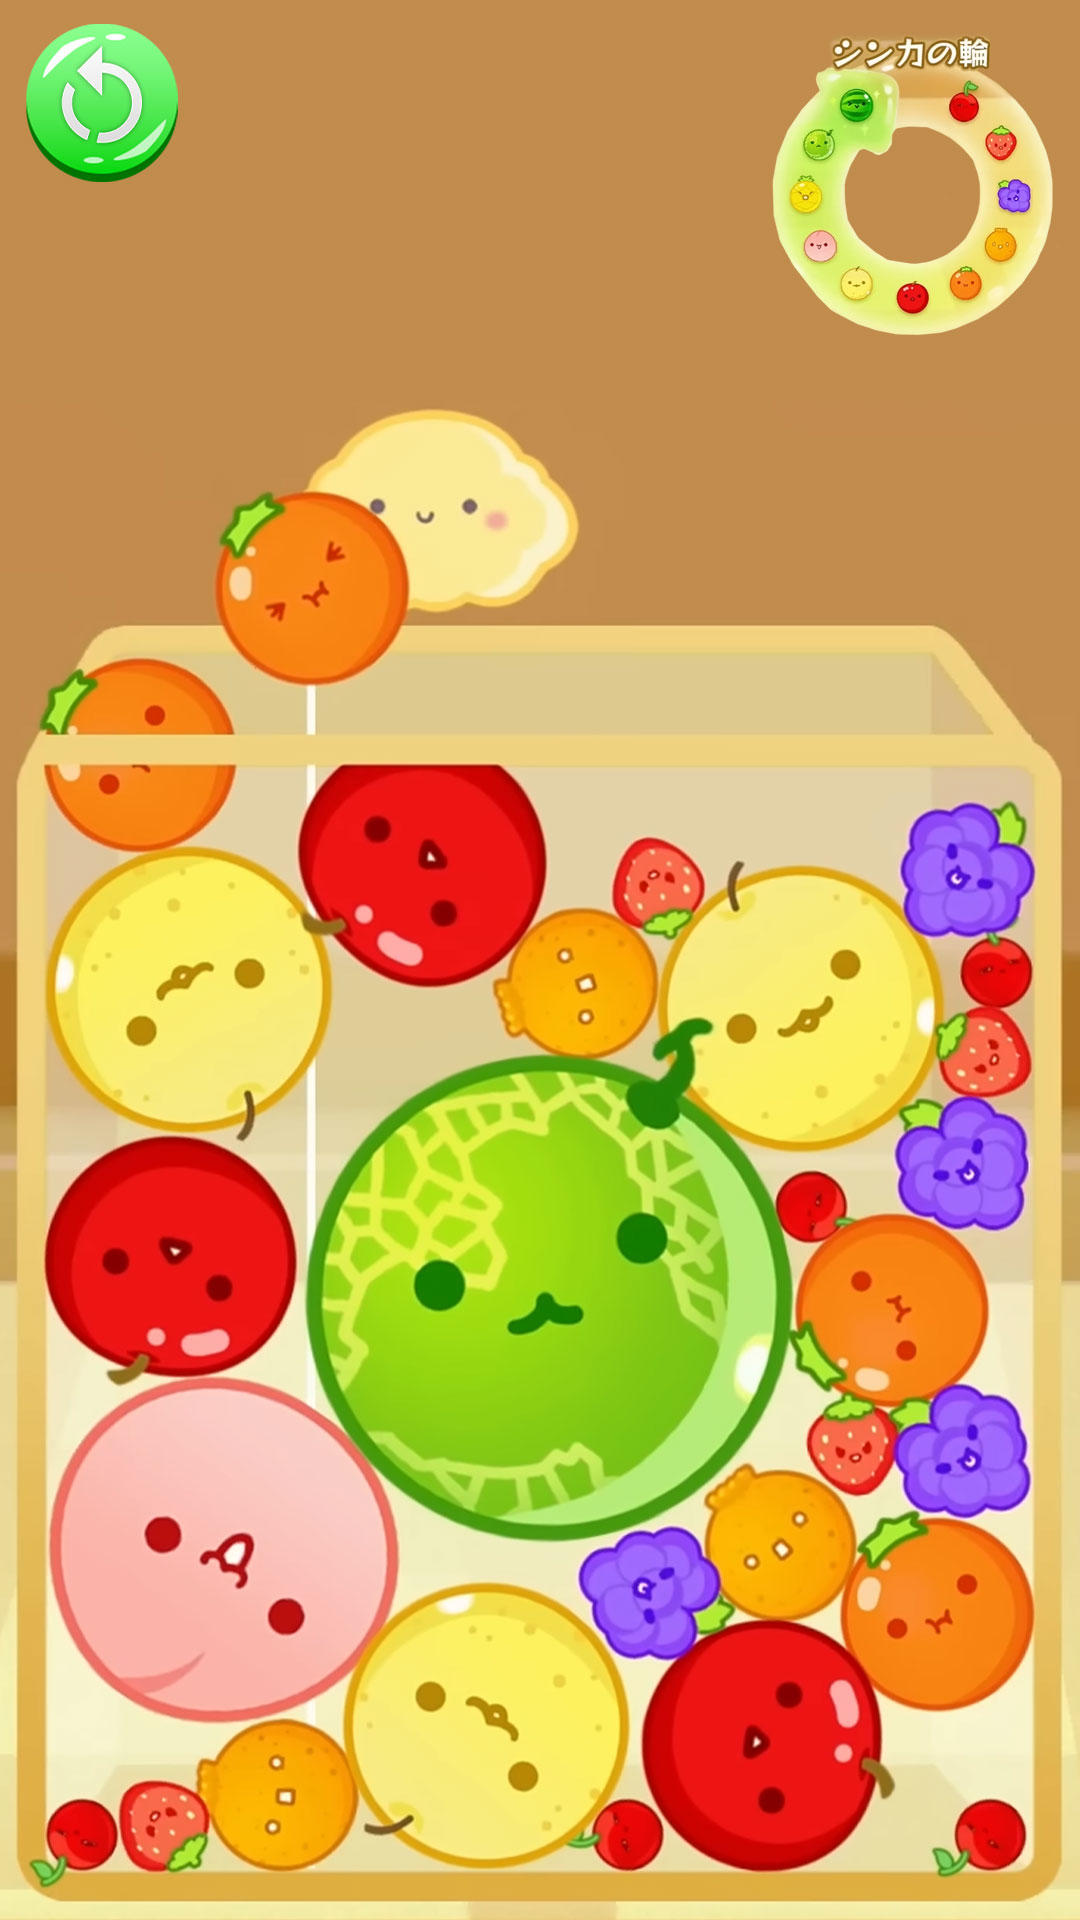 Watermelon Game : Offline遊戲截圖